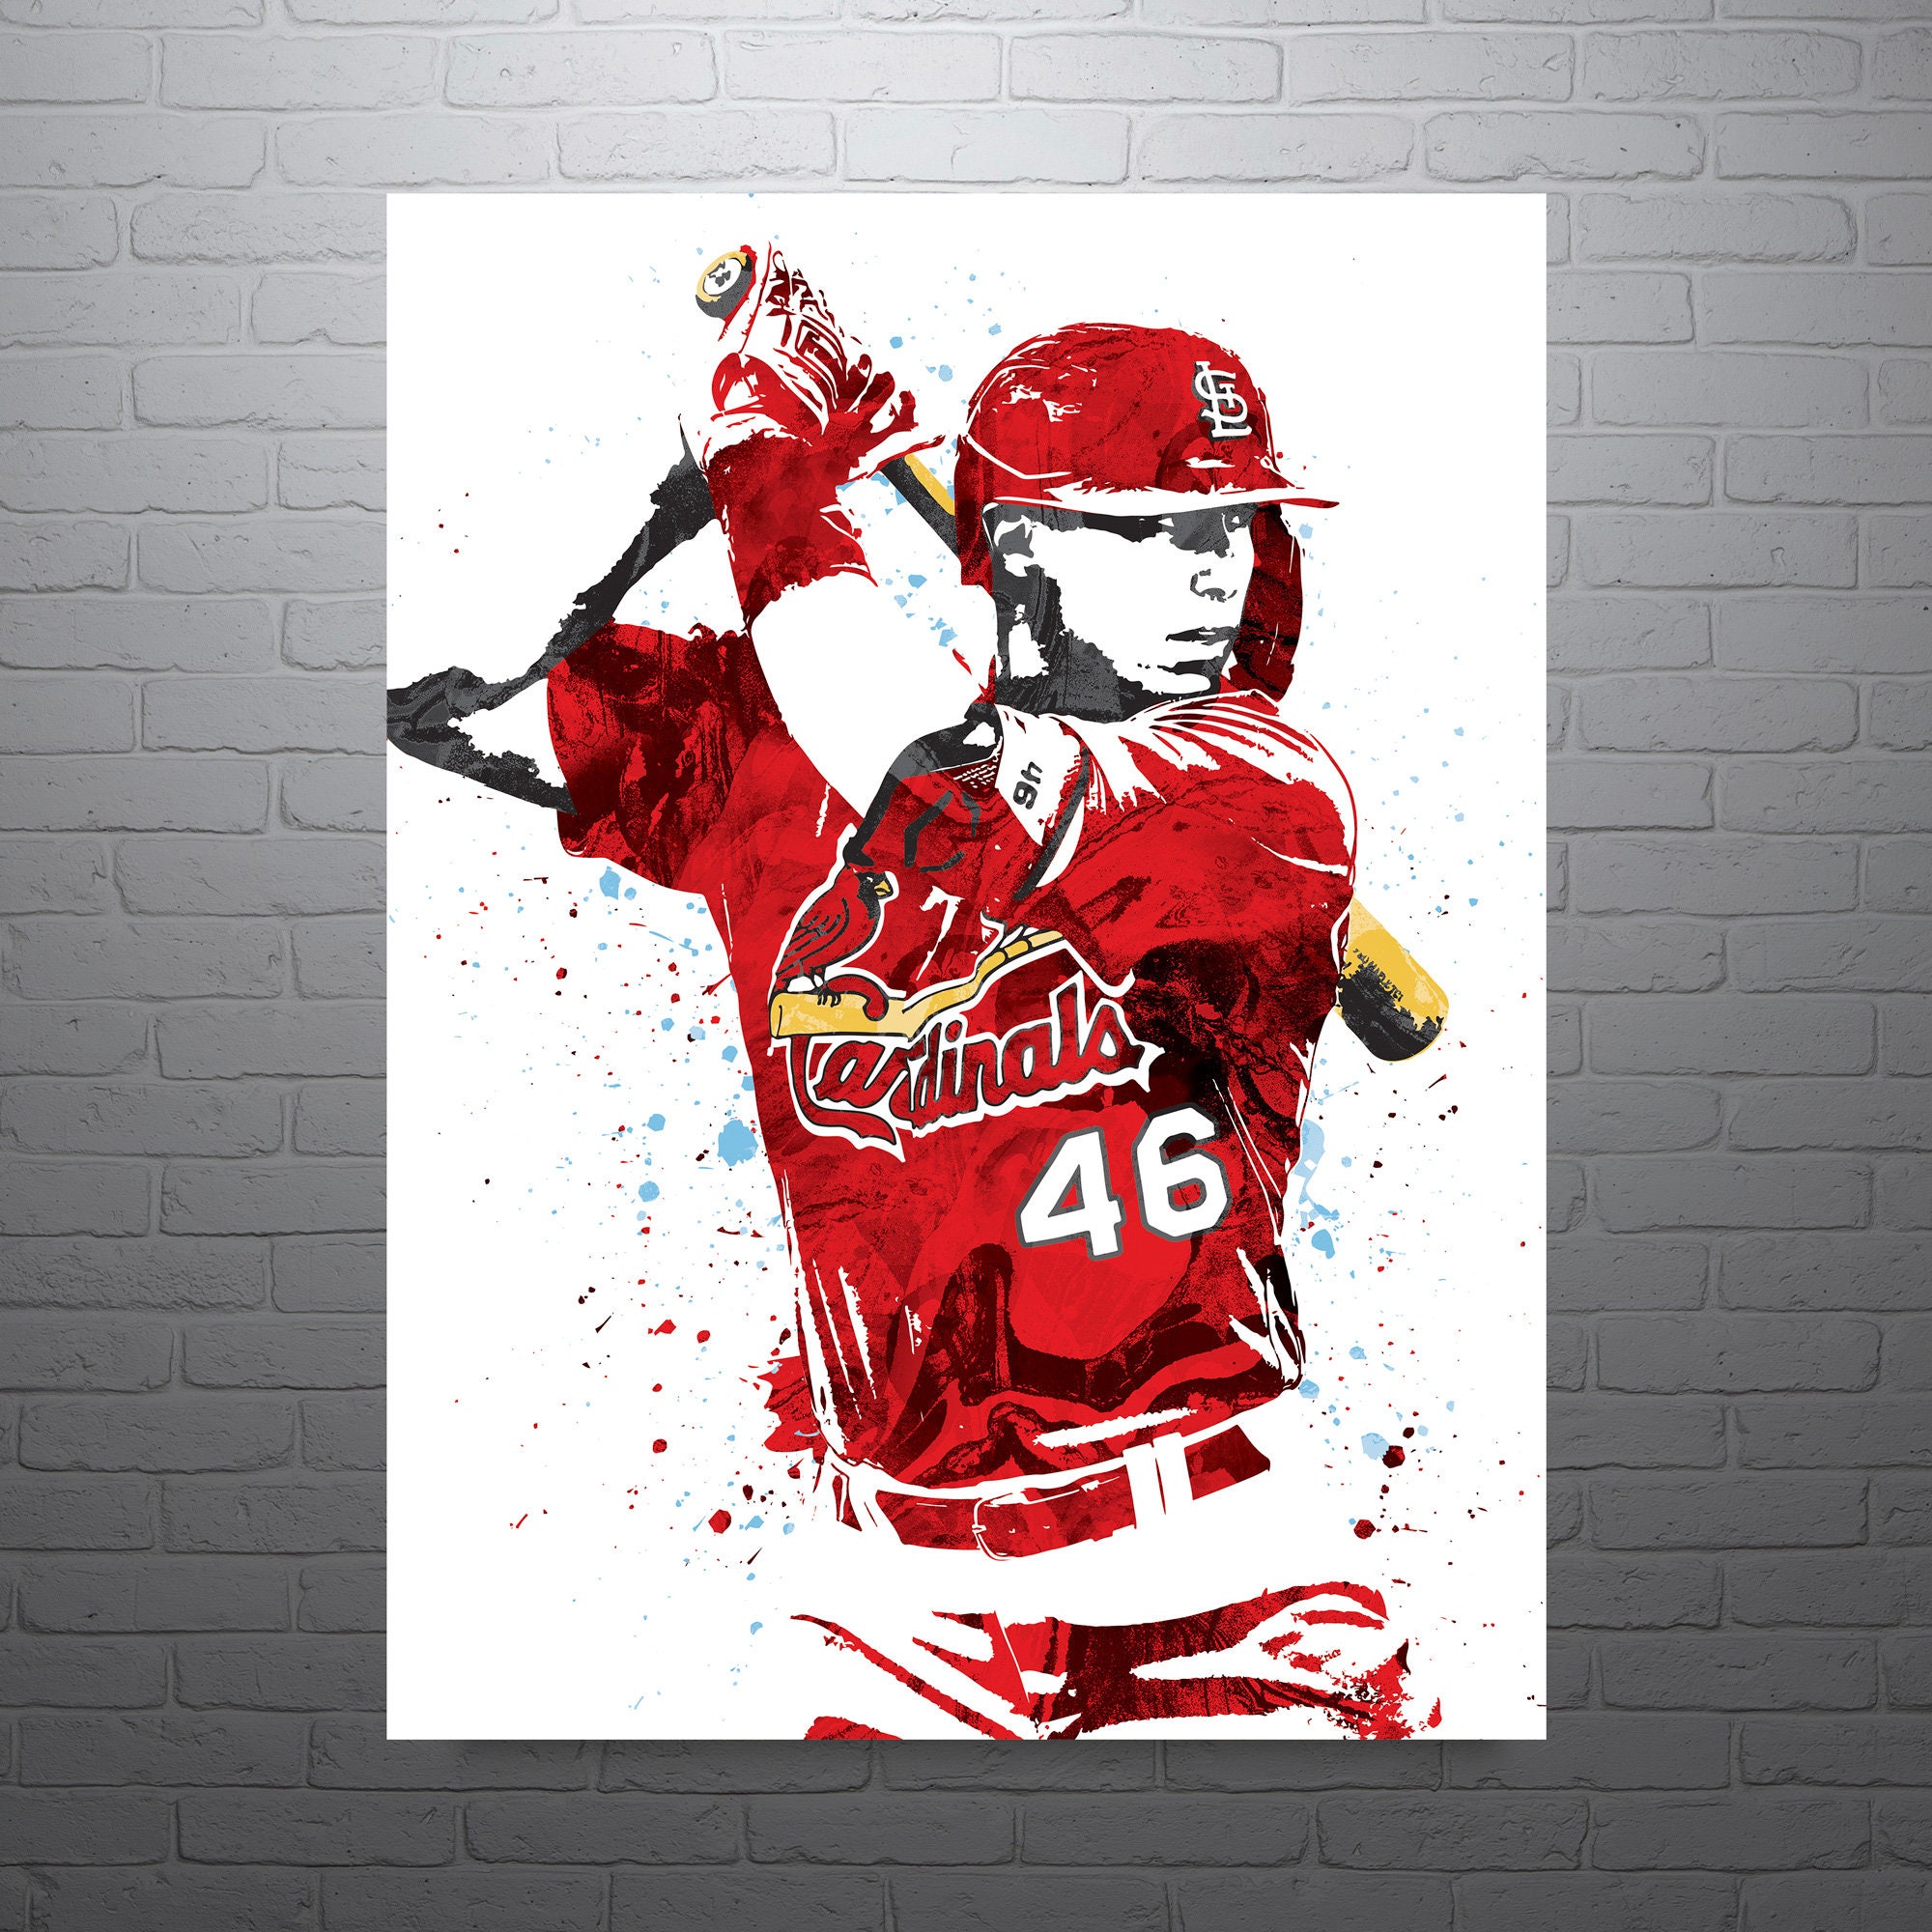 Paul Goldschmidt St. Louis Cardinals Baseball Poster Man -  Singapore